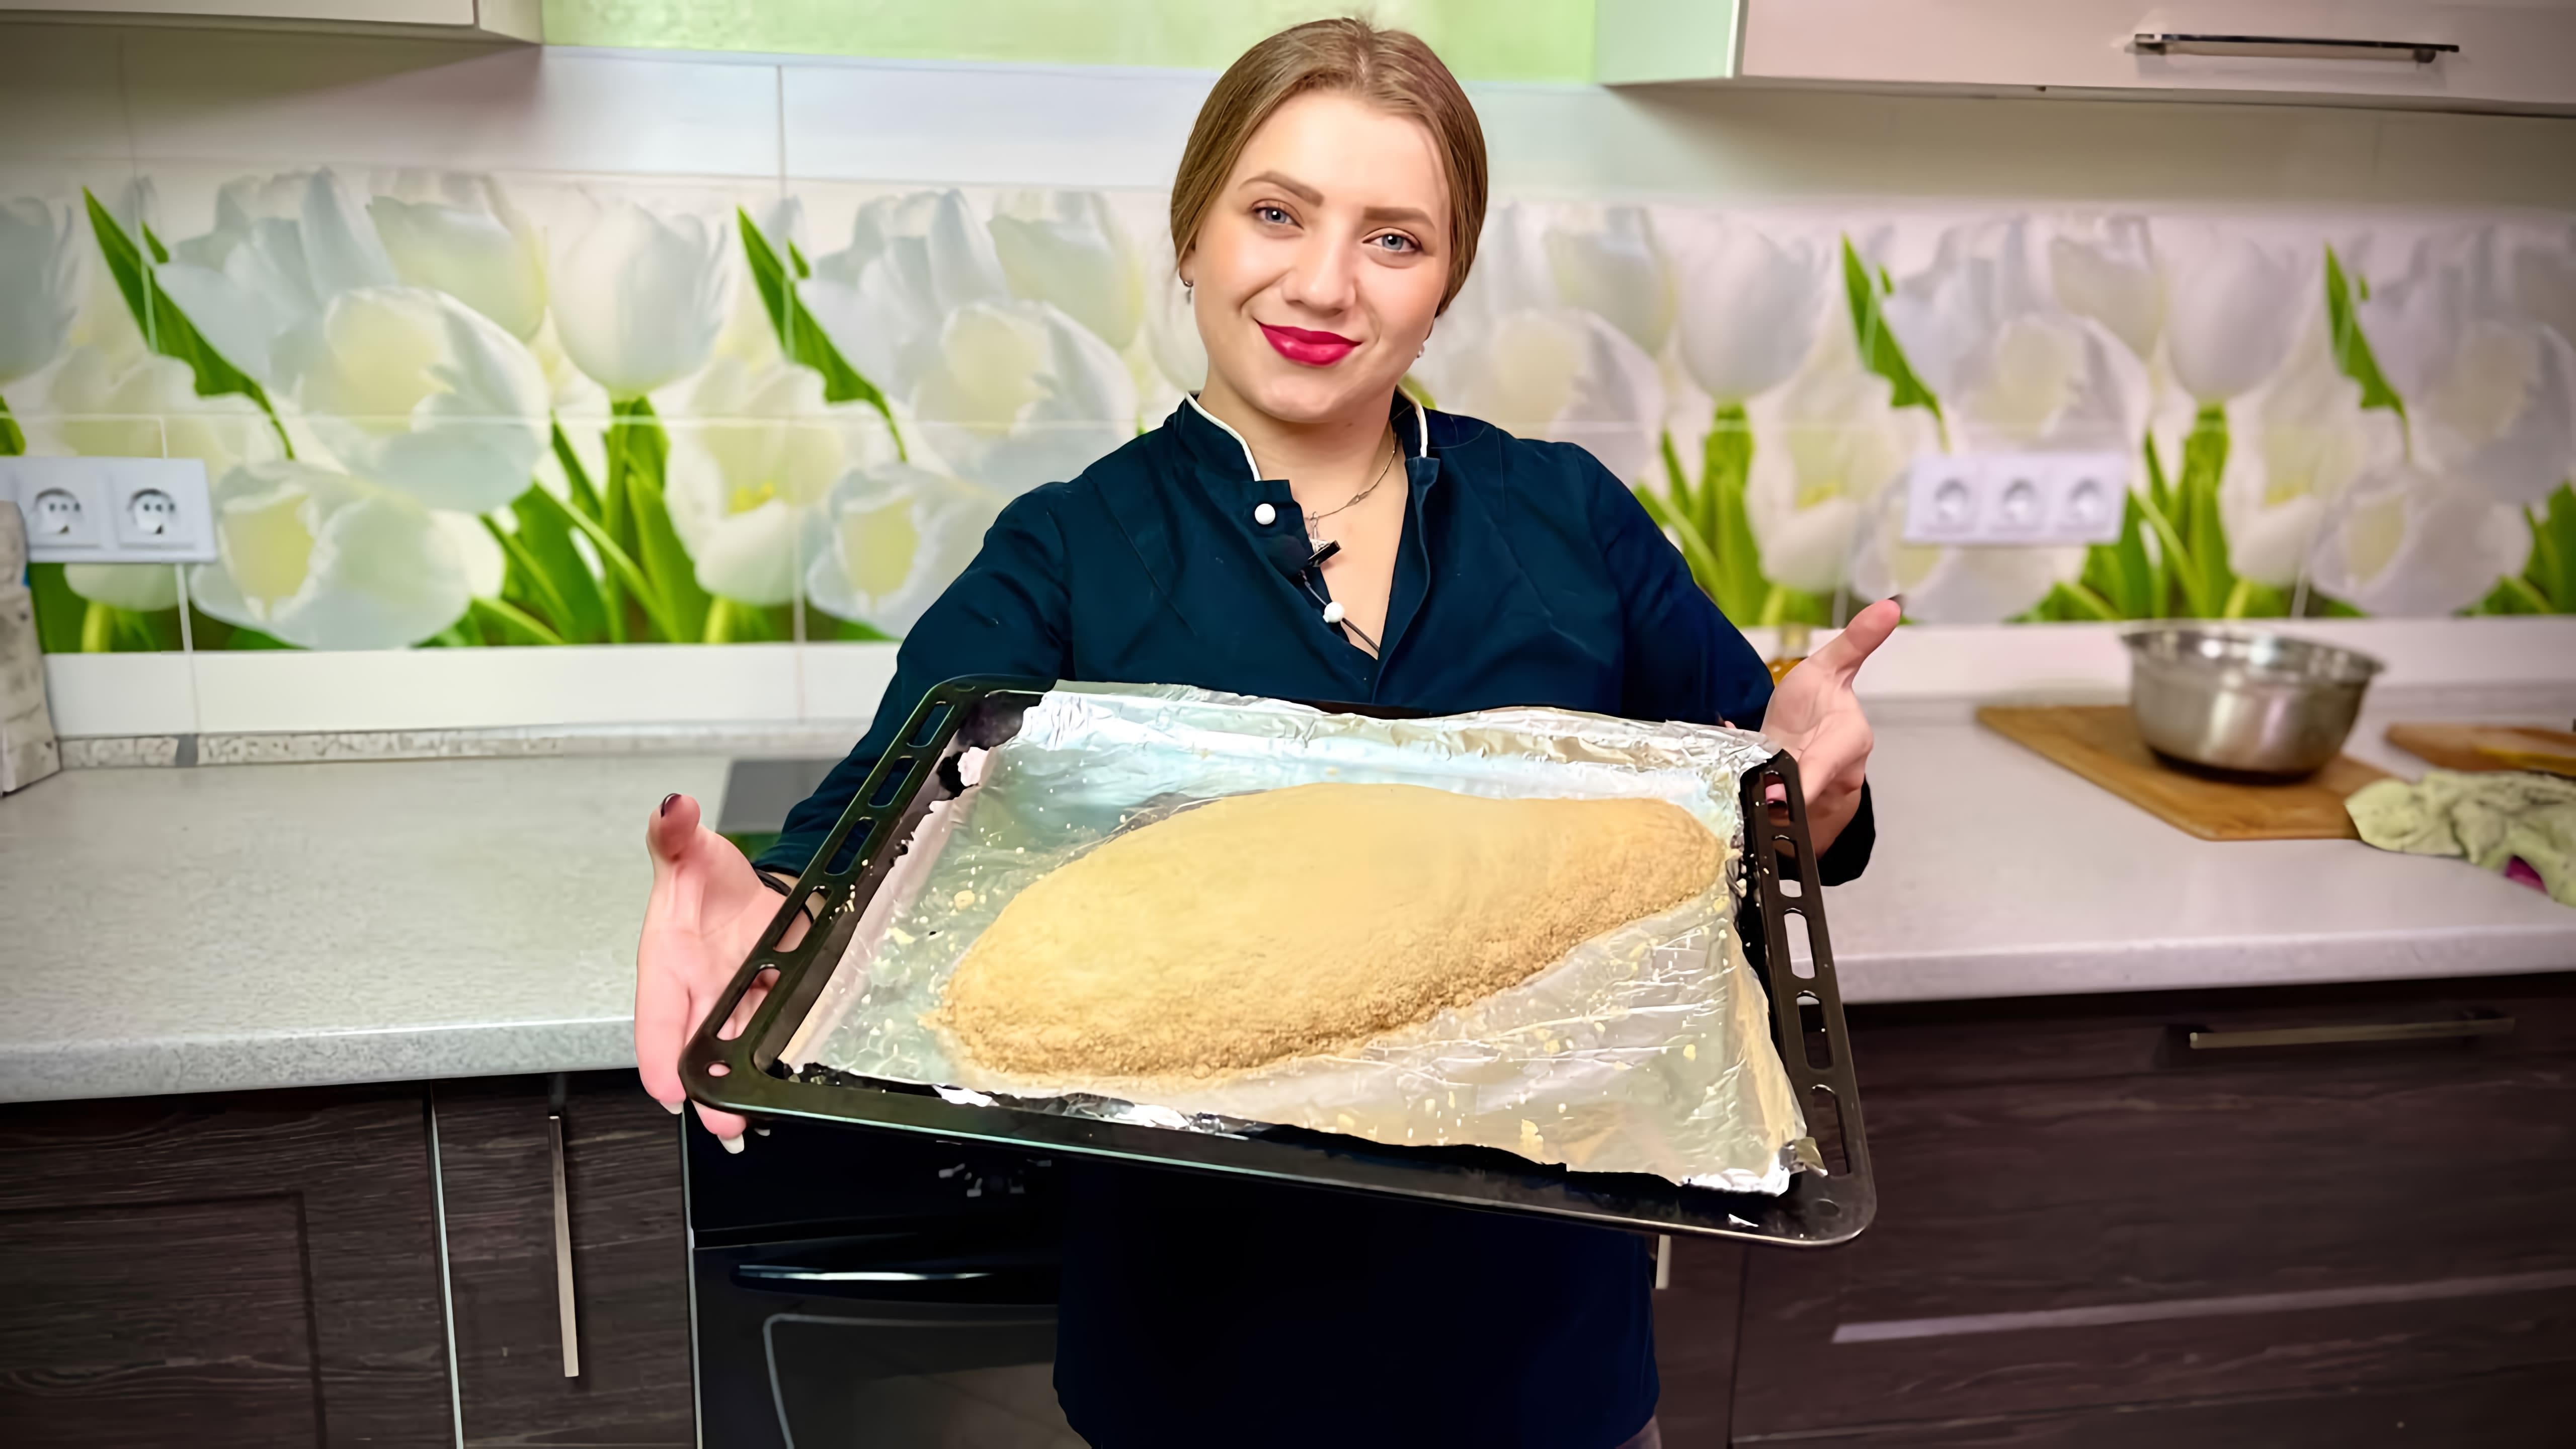 В этом видео Лиза Шеремет, автор канала "И за готовит", впервые в своей жизни готовит рыбу в солевом панцире